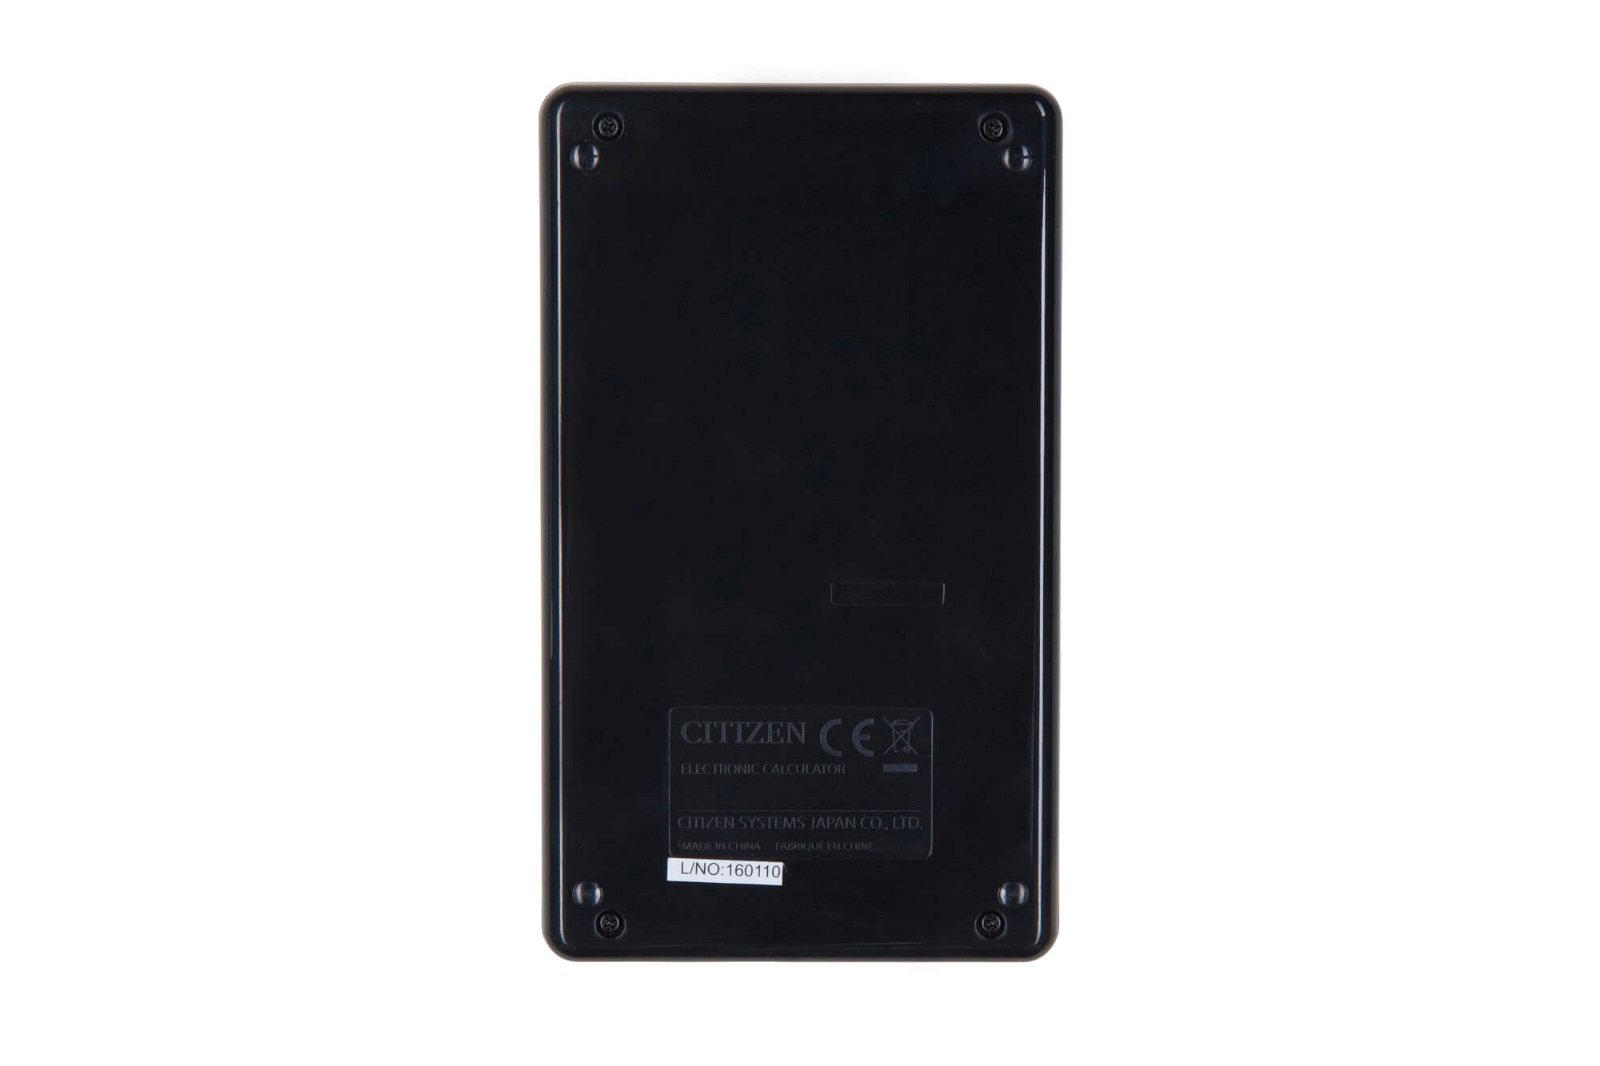 Taschenrechner ECC-110 Eco pocket, schwarz